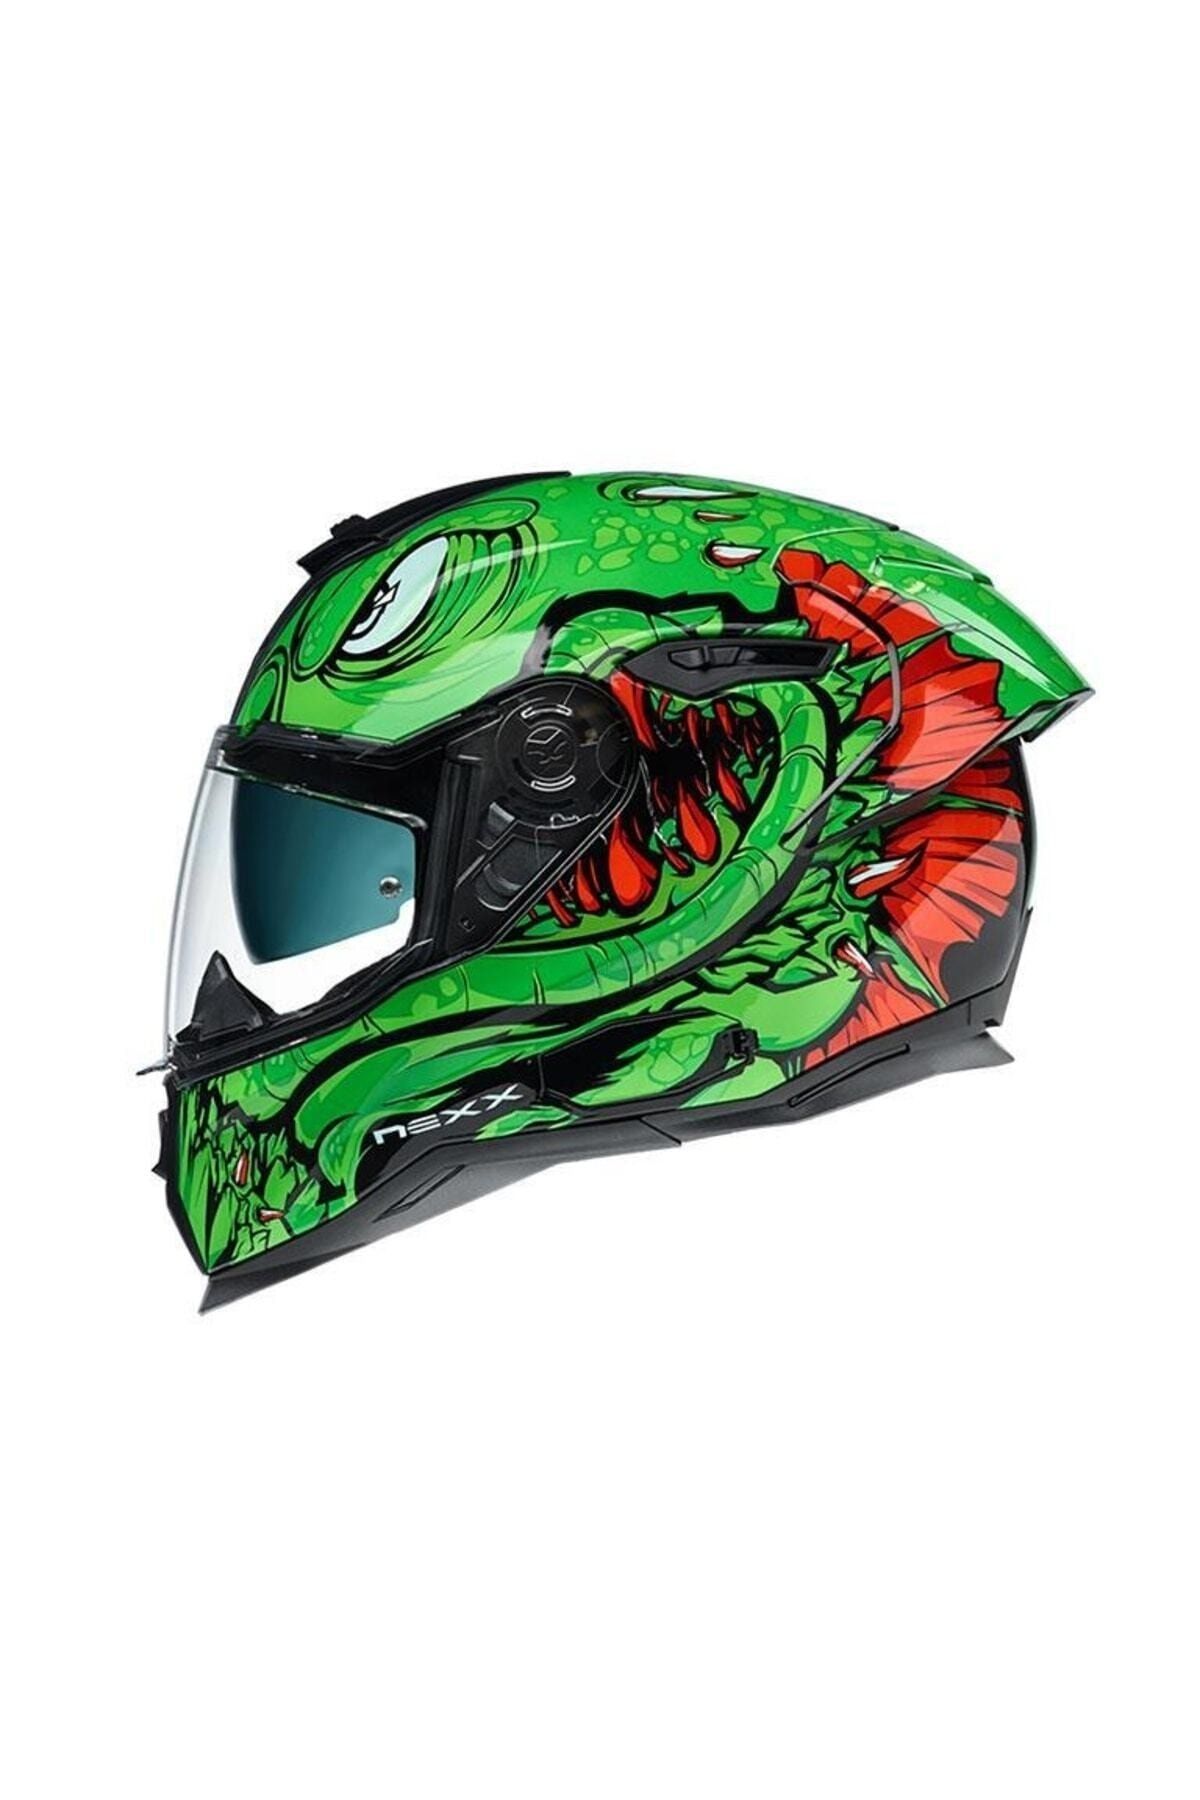 Nexx Motosiklet Kaskı Sx100r Abisal Yeşil Kırmızı Kask Motosiklet Kaskı